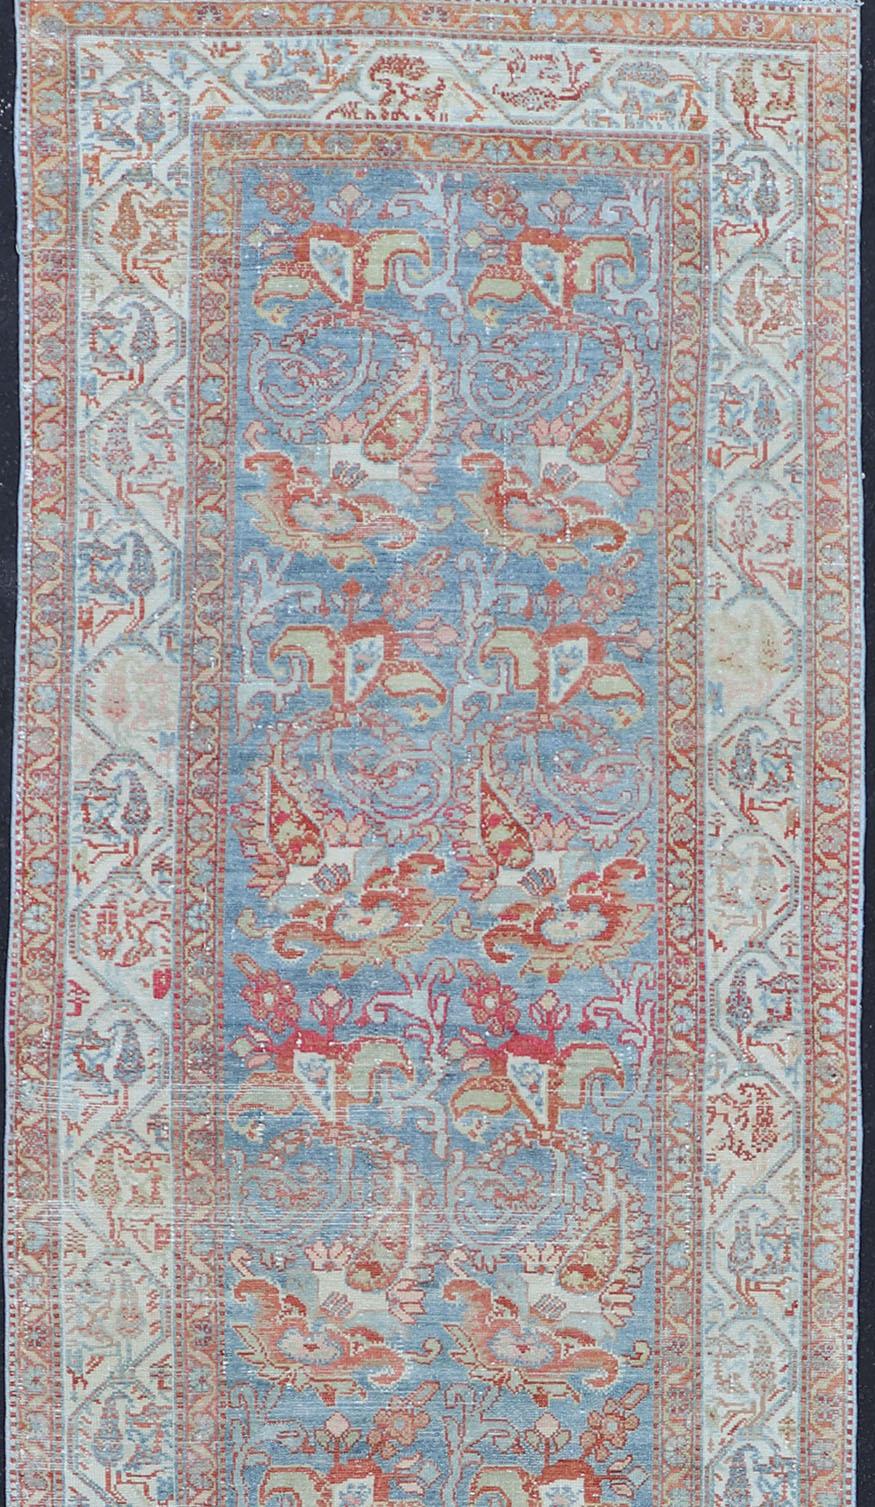 Long tapis de couloir persan Malayer avec motif floral sur toute sa surface. Tapis de couloir persan Malayer dans des tons doux de bleu, de rouge doux, de crème et de terre. Tapis EMB-9532-03-P13031, Keivan Woven Arts / pays d'origine / type : Iran